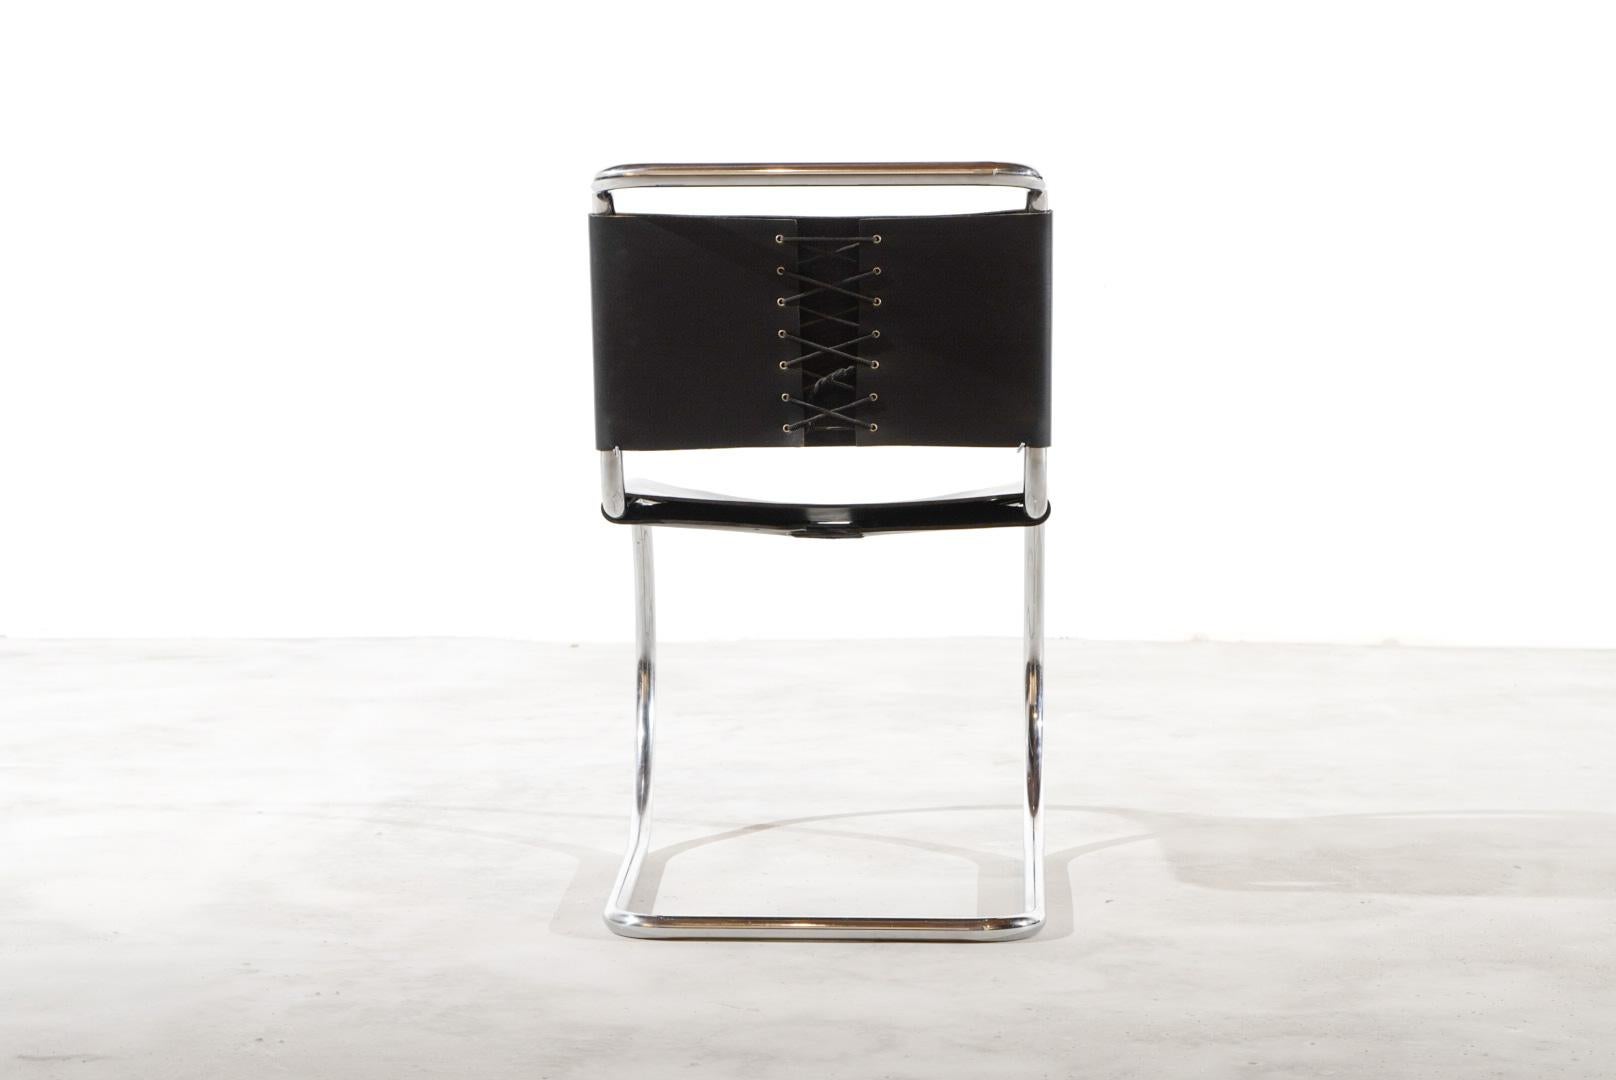 Magnifique  Chaises d'appoint MR10 de Knoll International en cuir épais avec châssis tubulaire chromé en porte-à-faux. 

Le chrome et le cuir sont en excellent état.

Les chaises datent des années 1970. Le Bauhaus dans toute sa splendeur.

La chaise